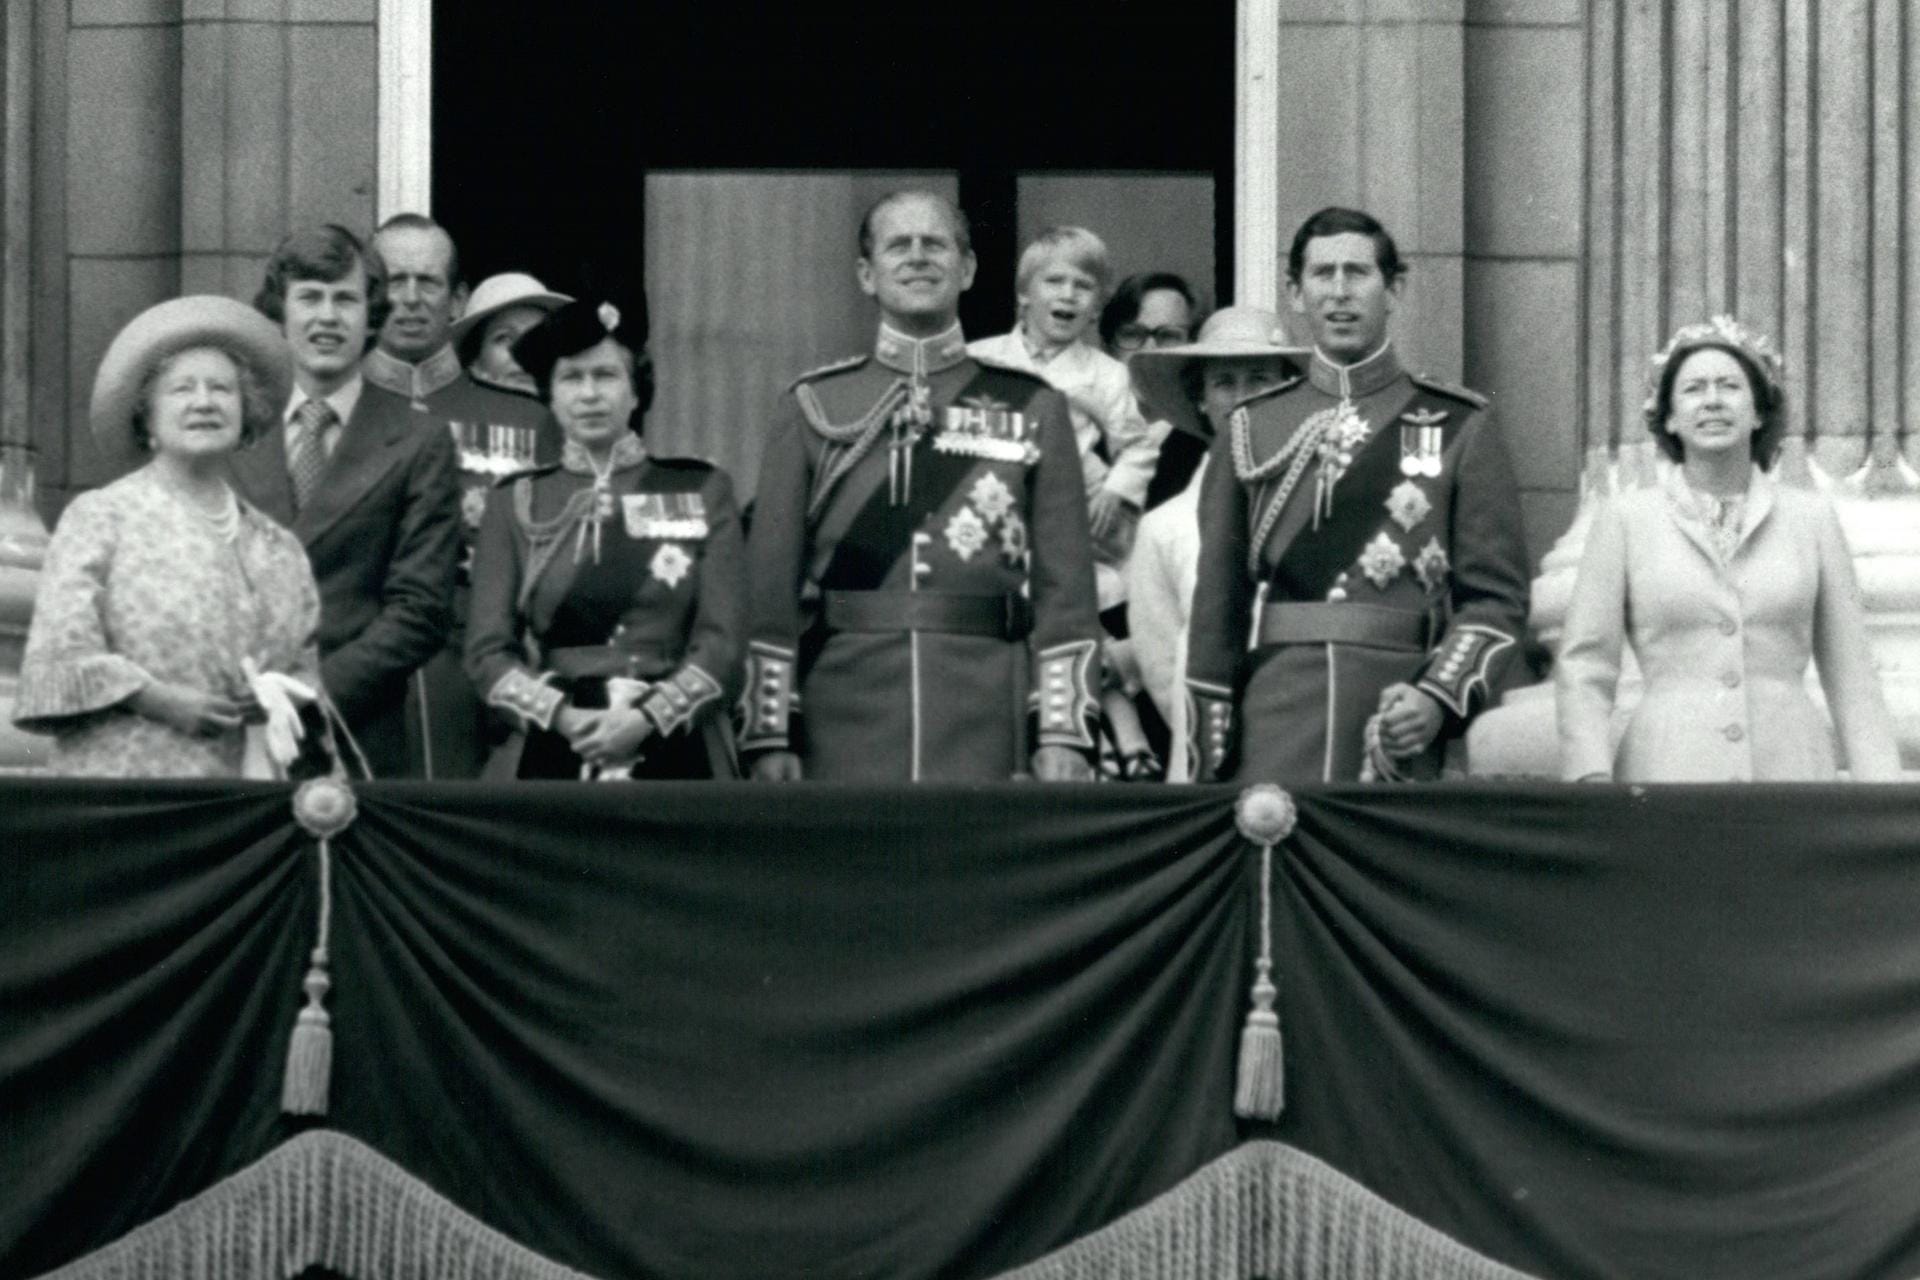 1979: Die Queen beobachtet von ihrem Balkon aus die Parade. Mit dabei sind ihre Mutter, The Queen Mother, ihr Mann Prinz Philip, sowie ihr Sohn Prinz Charles.